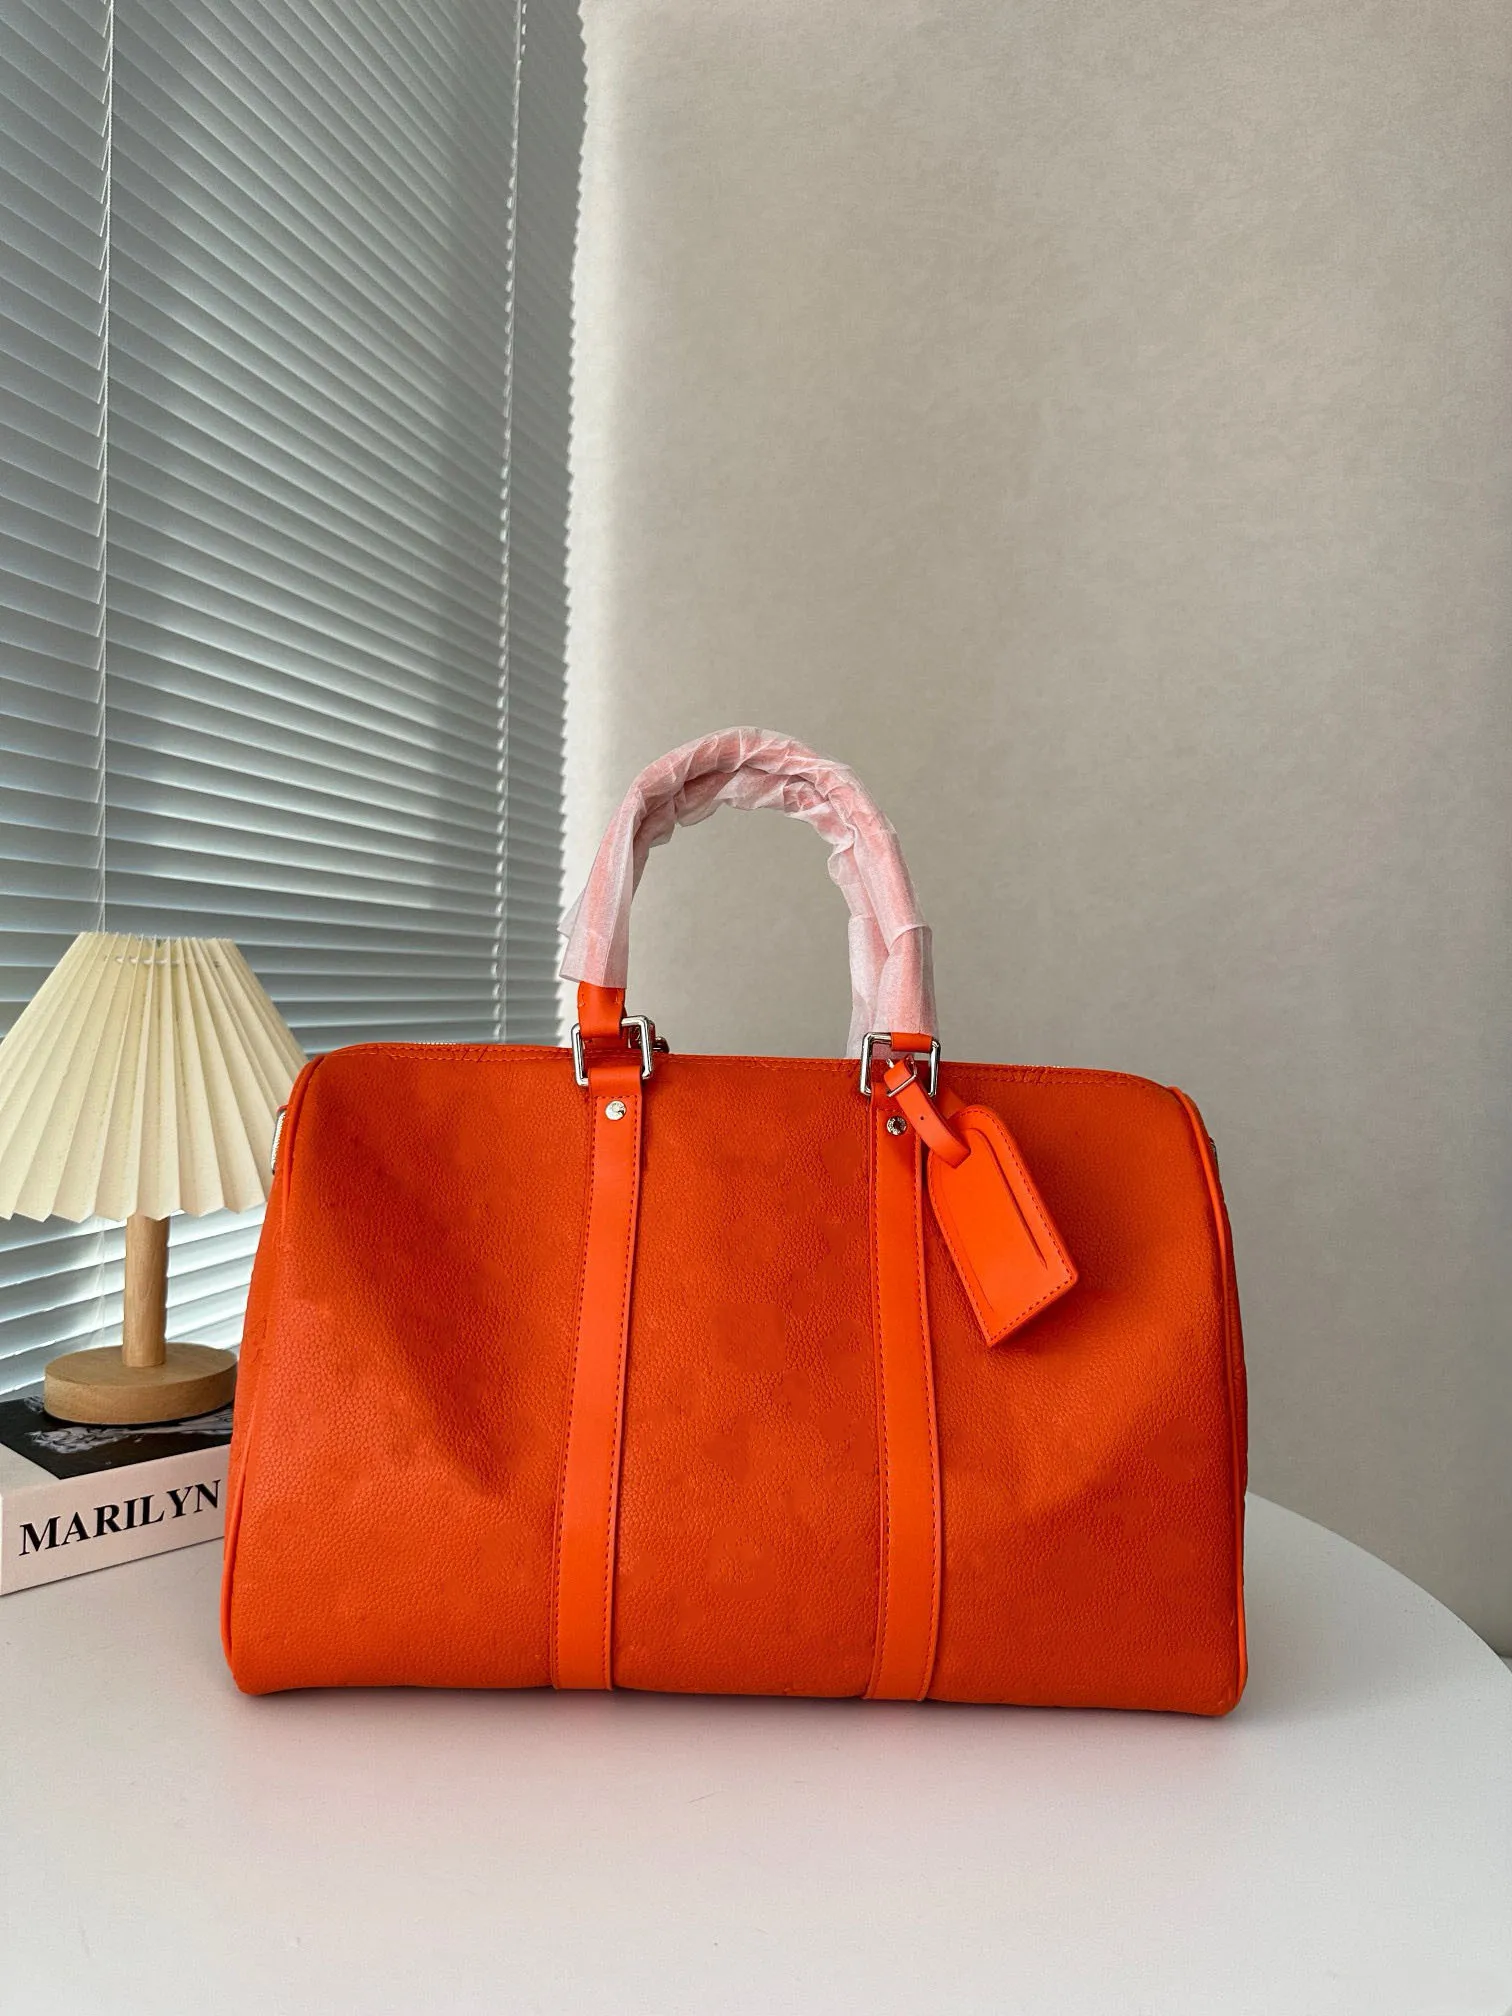 Duffle Bag Designer Crossbody Travel Bag Stor kapacitet Väska med zip Namn TAP OCH KALLLOCK FLEXIBLE Hållbar Håll allt ditt behov Perfekt väska för nöjesresor